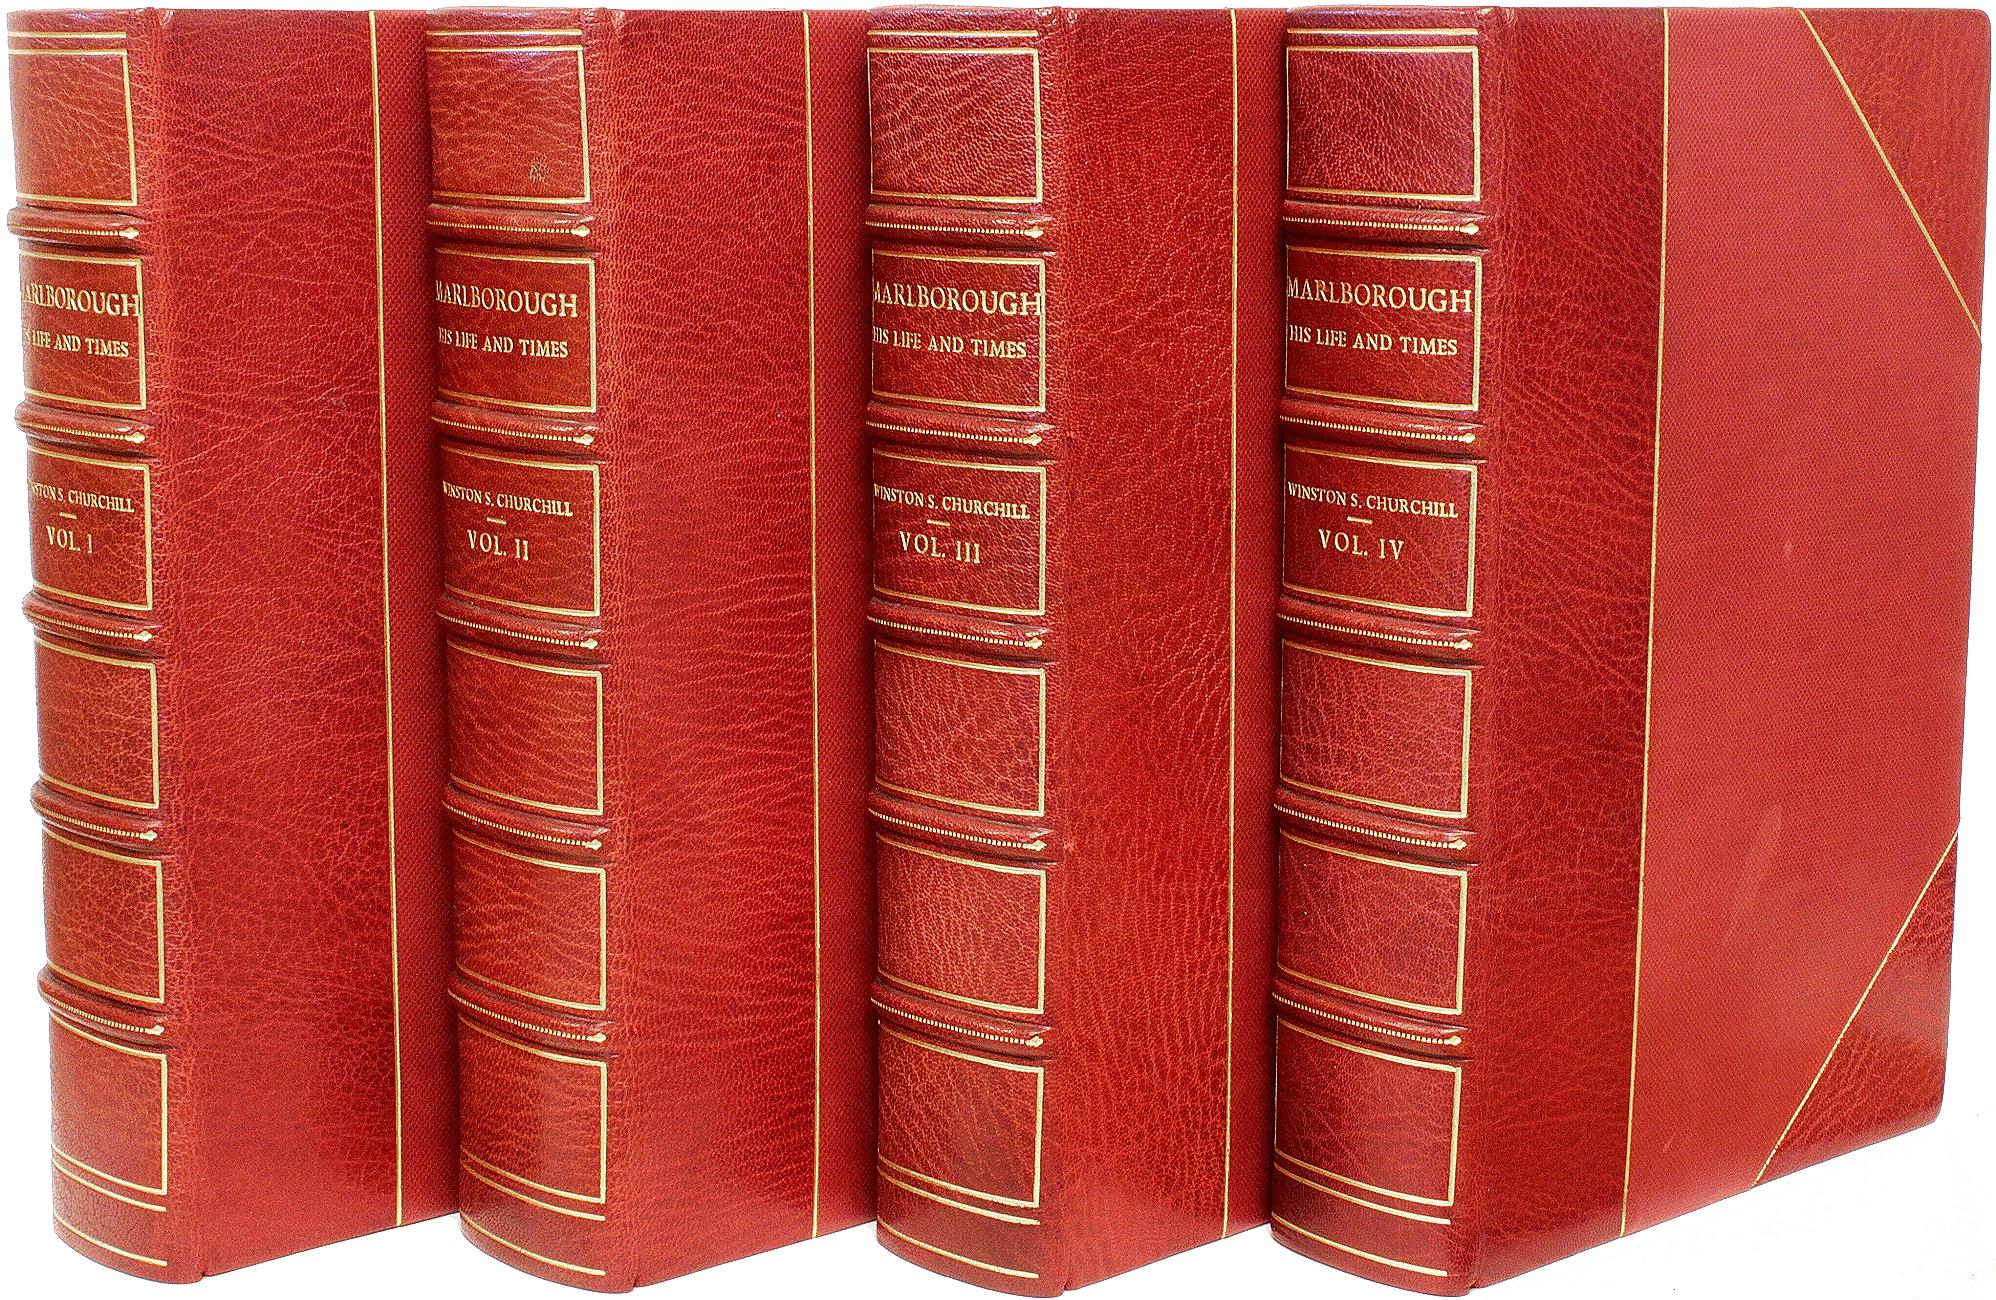 AUTOR: CHURCHILL, Winston S. 

TITEL: Marlborough - Sein Leben und seine Zeiten.

HERAUSGEBER: London: George G. Harrap, 1933, 34, 36, 38.

BESCHREIBUNG: ALLE ERSTAUSGABEN. 4 Bände, 9-1/16